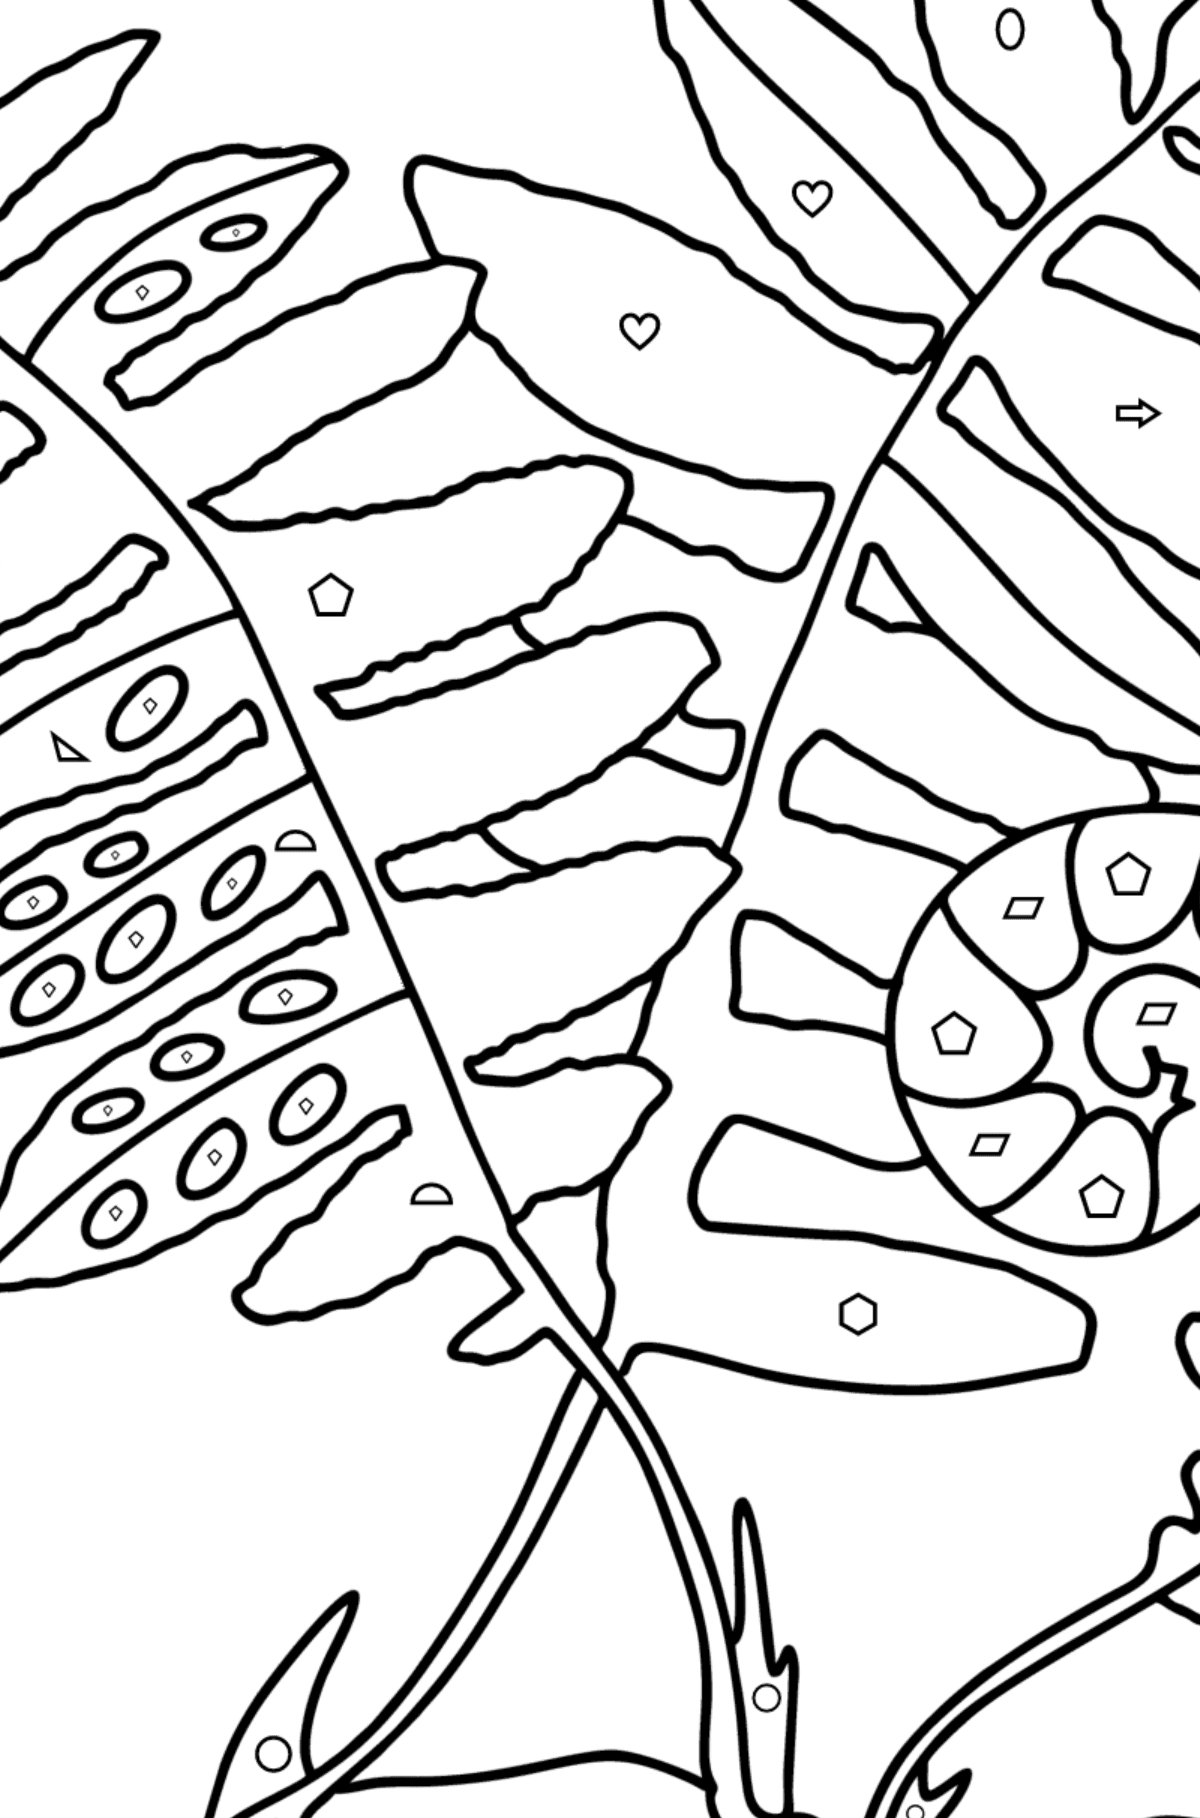 Раскраска Листья папоротника - Картинка высокого качества для Детей